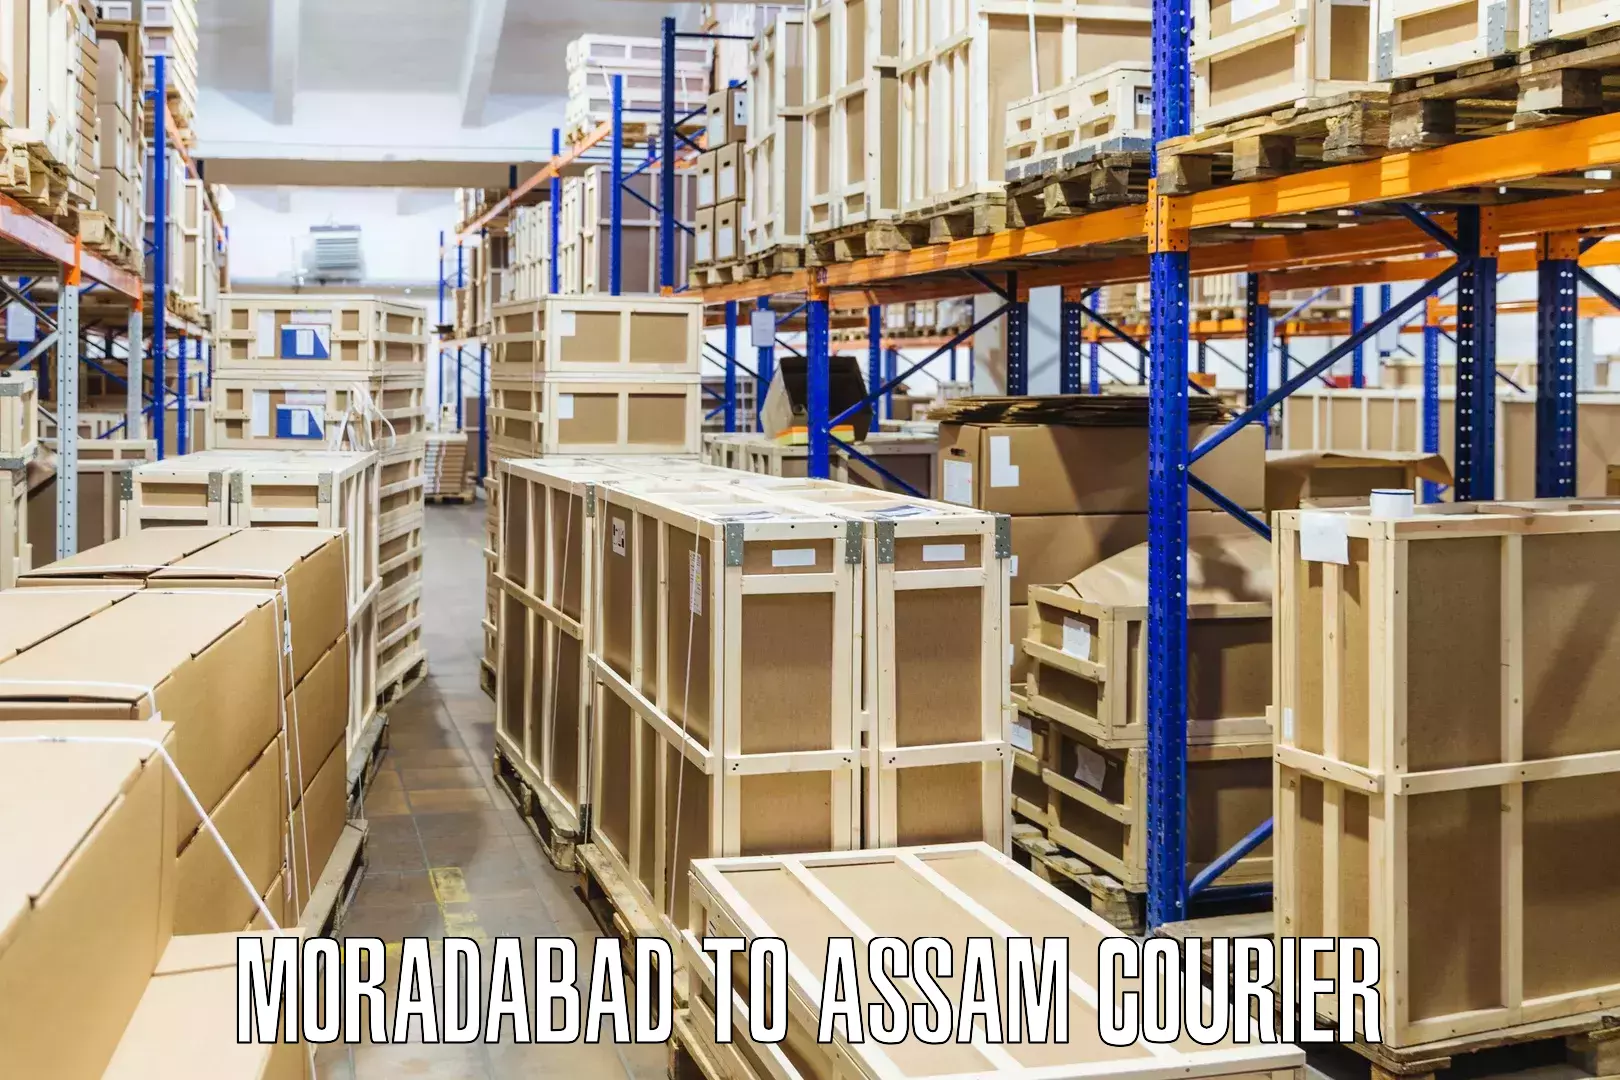 Specialized shipment handling Moradabad to Hajo